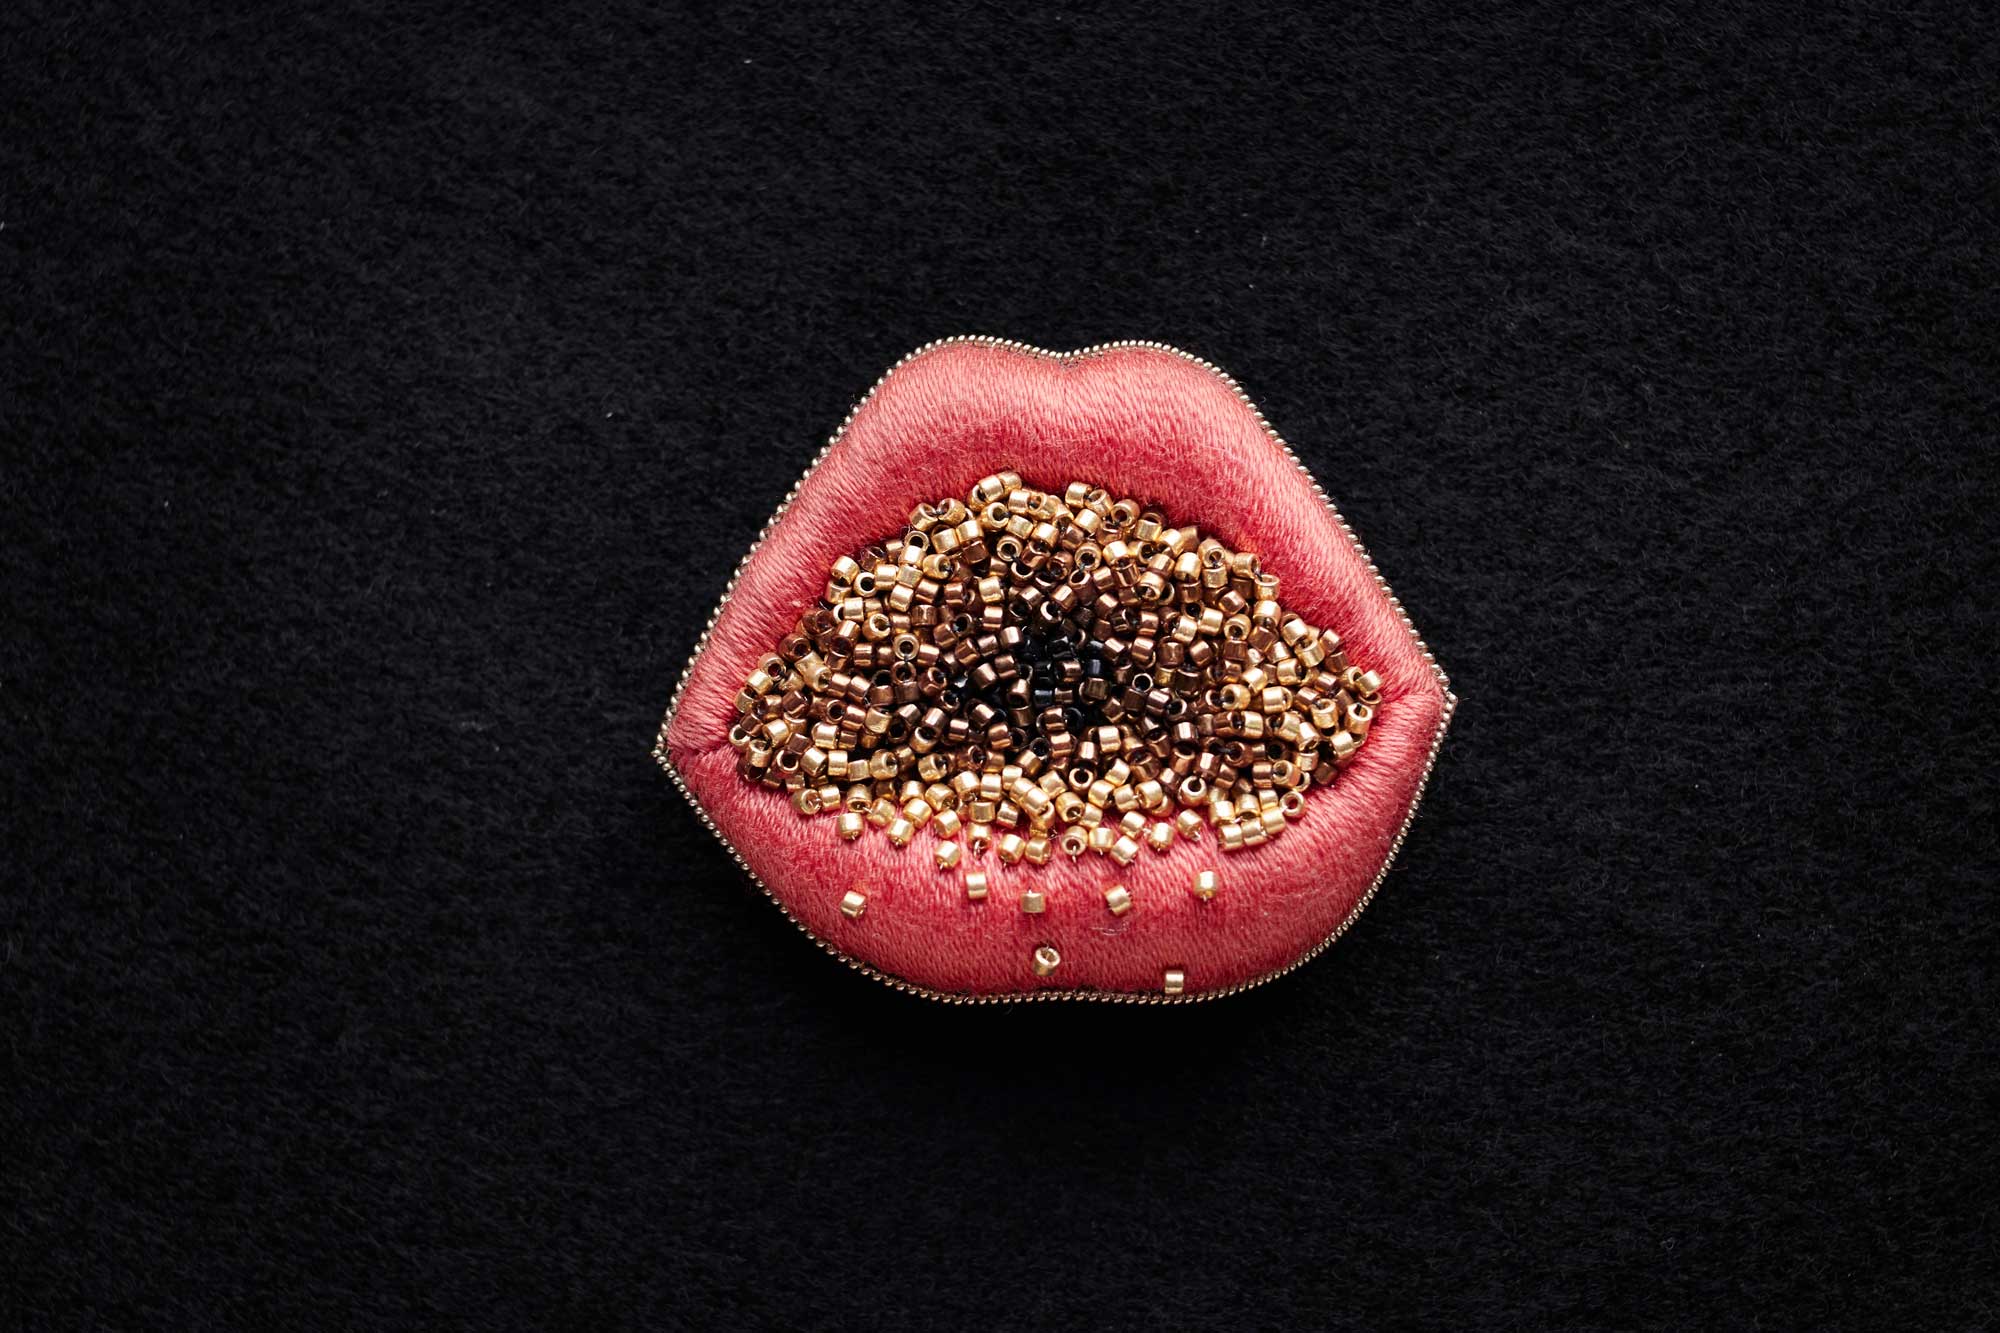 Feu intérieur, 2020 - Fil de coton, perles Miyuki Delica, jaseron. Broderie en stumpwork, perlage à l’aiguille - 6 x 5 x 3 cm - Photo : Nicolas Kohen